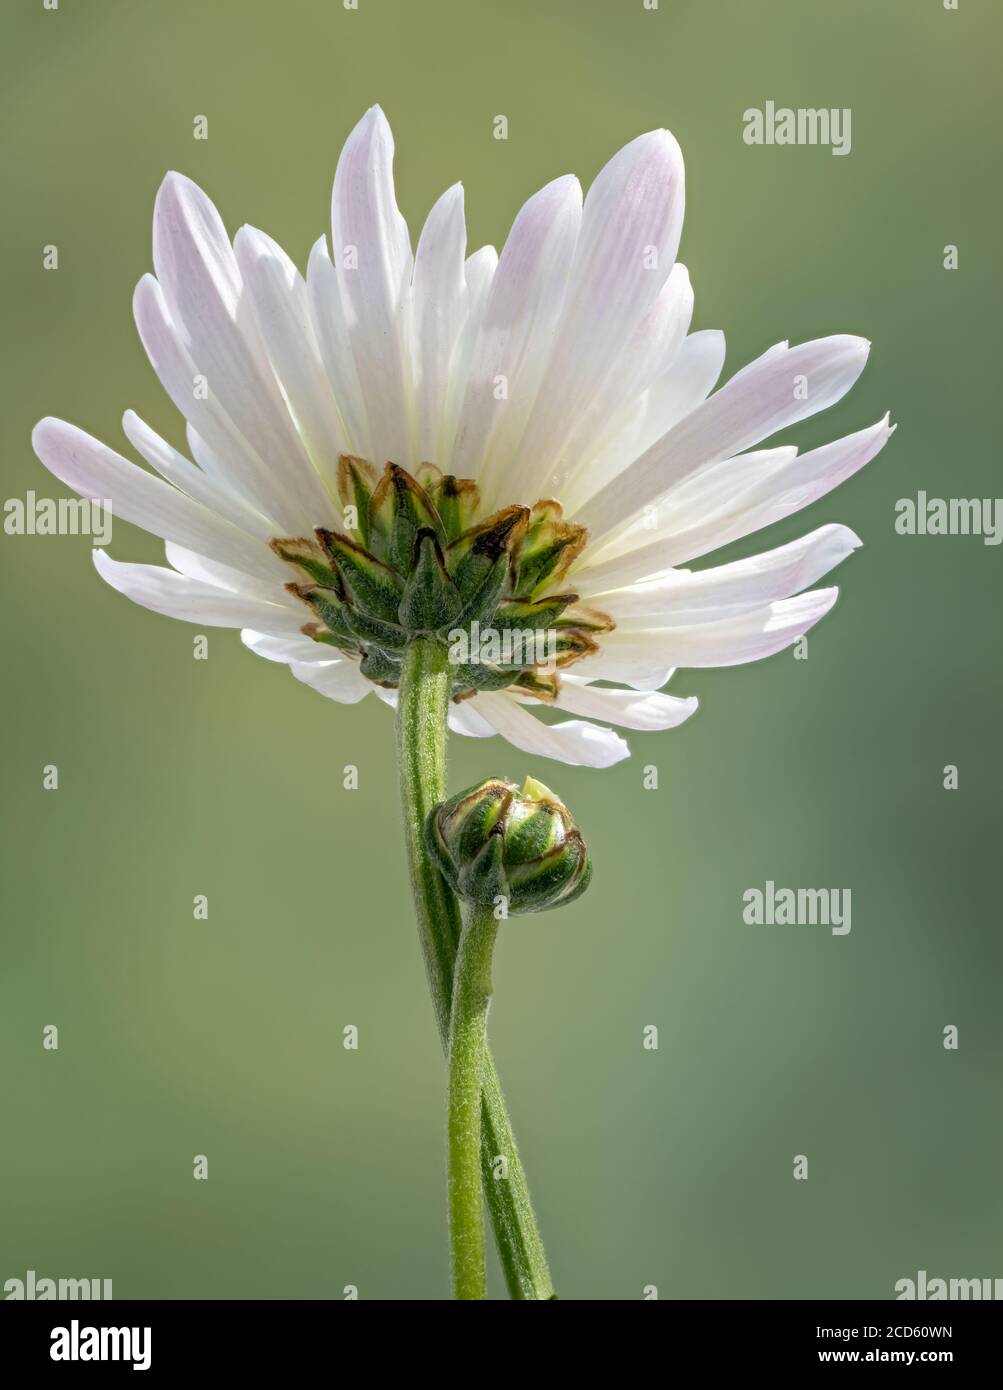 Close-up of white chrysanthemum flower Stock Photo